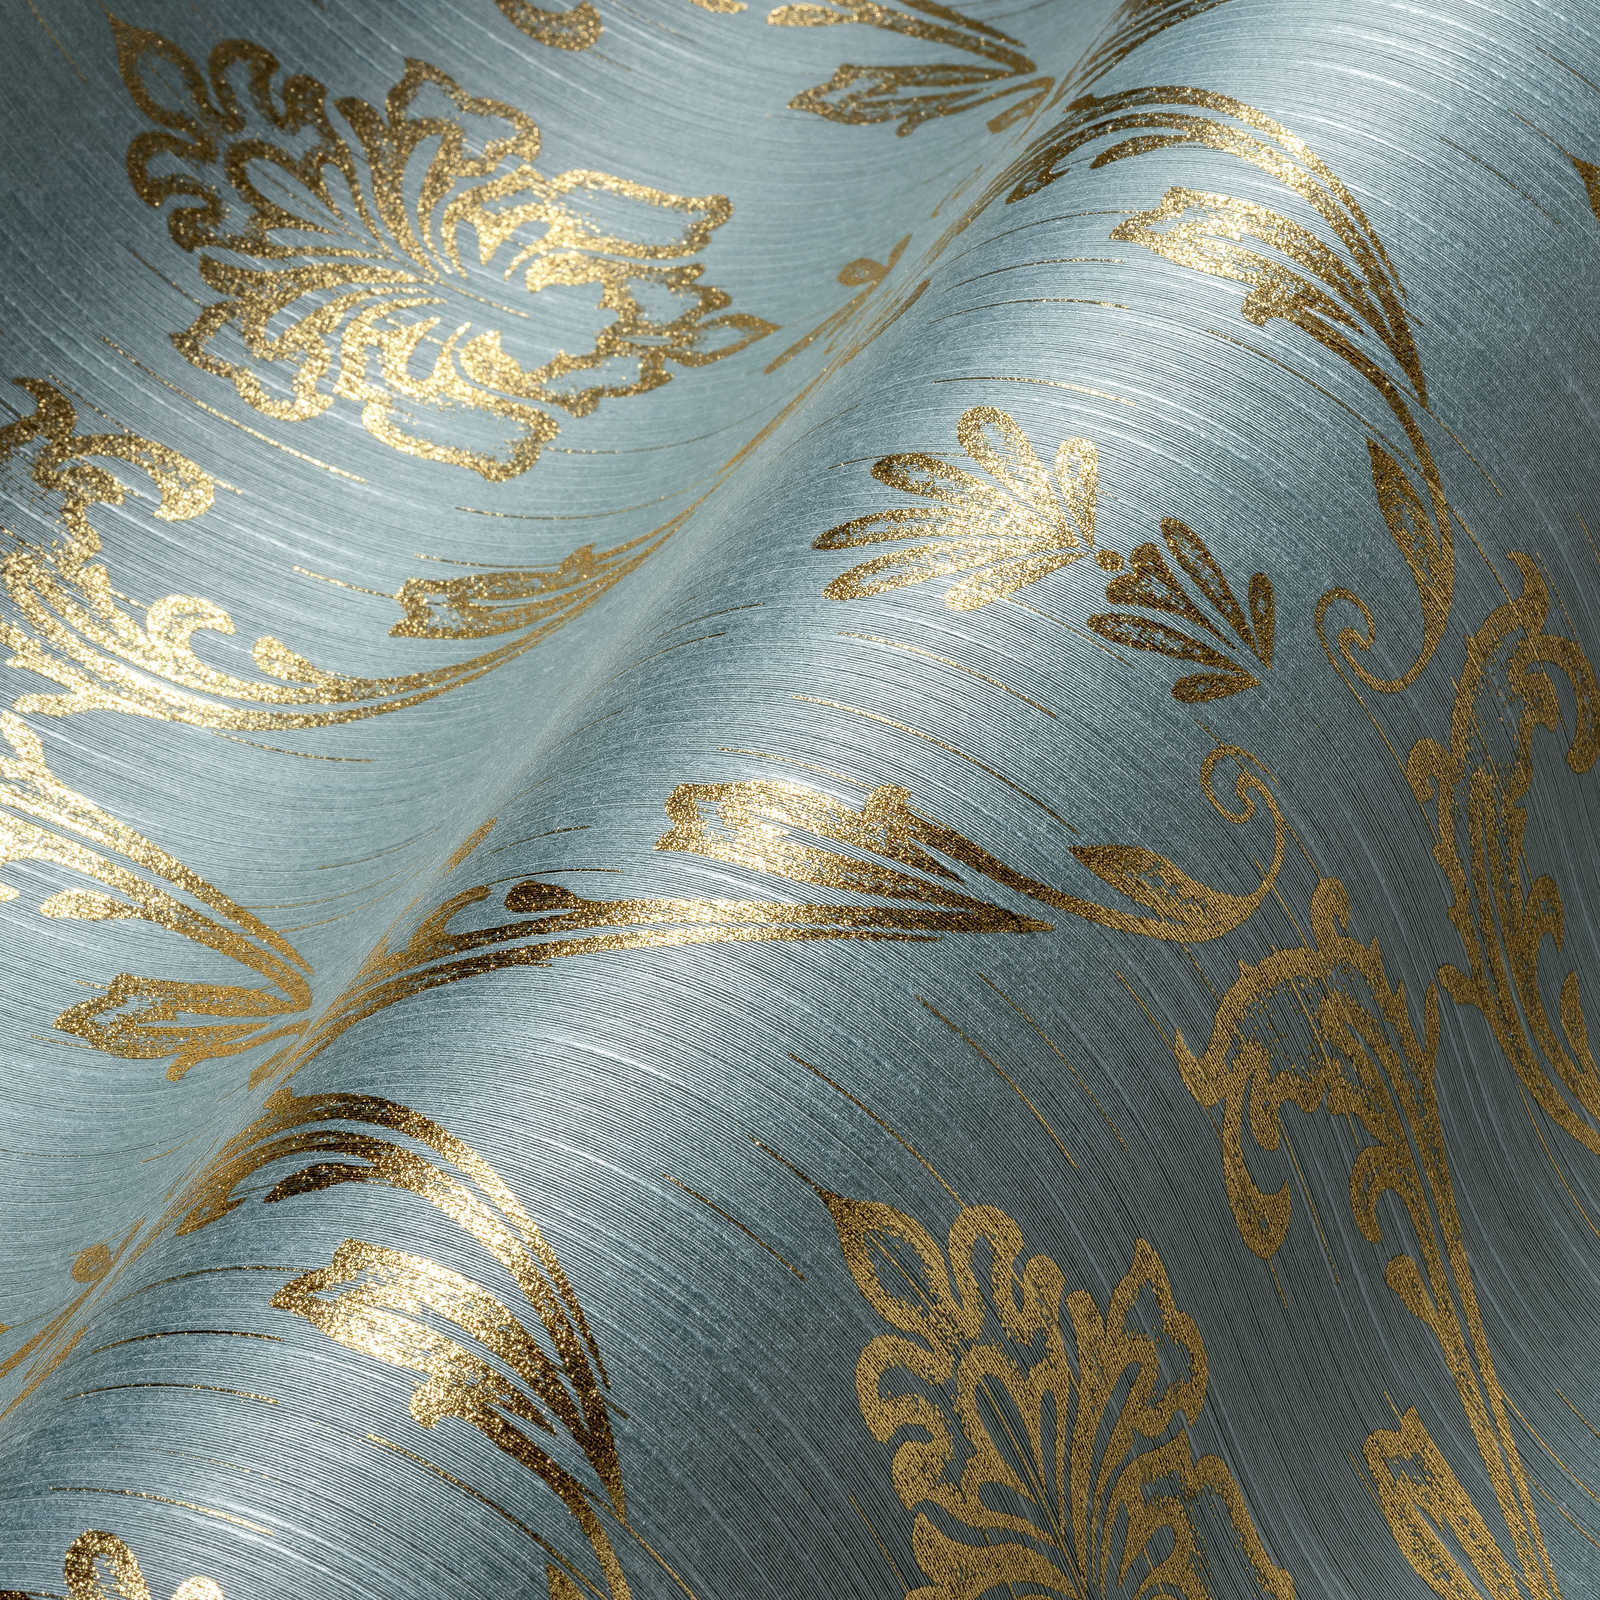             Papier peint ornemental avec éléments floraux dorés - or, bleu, vert
        